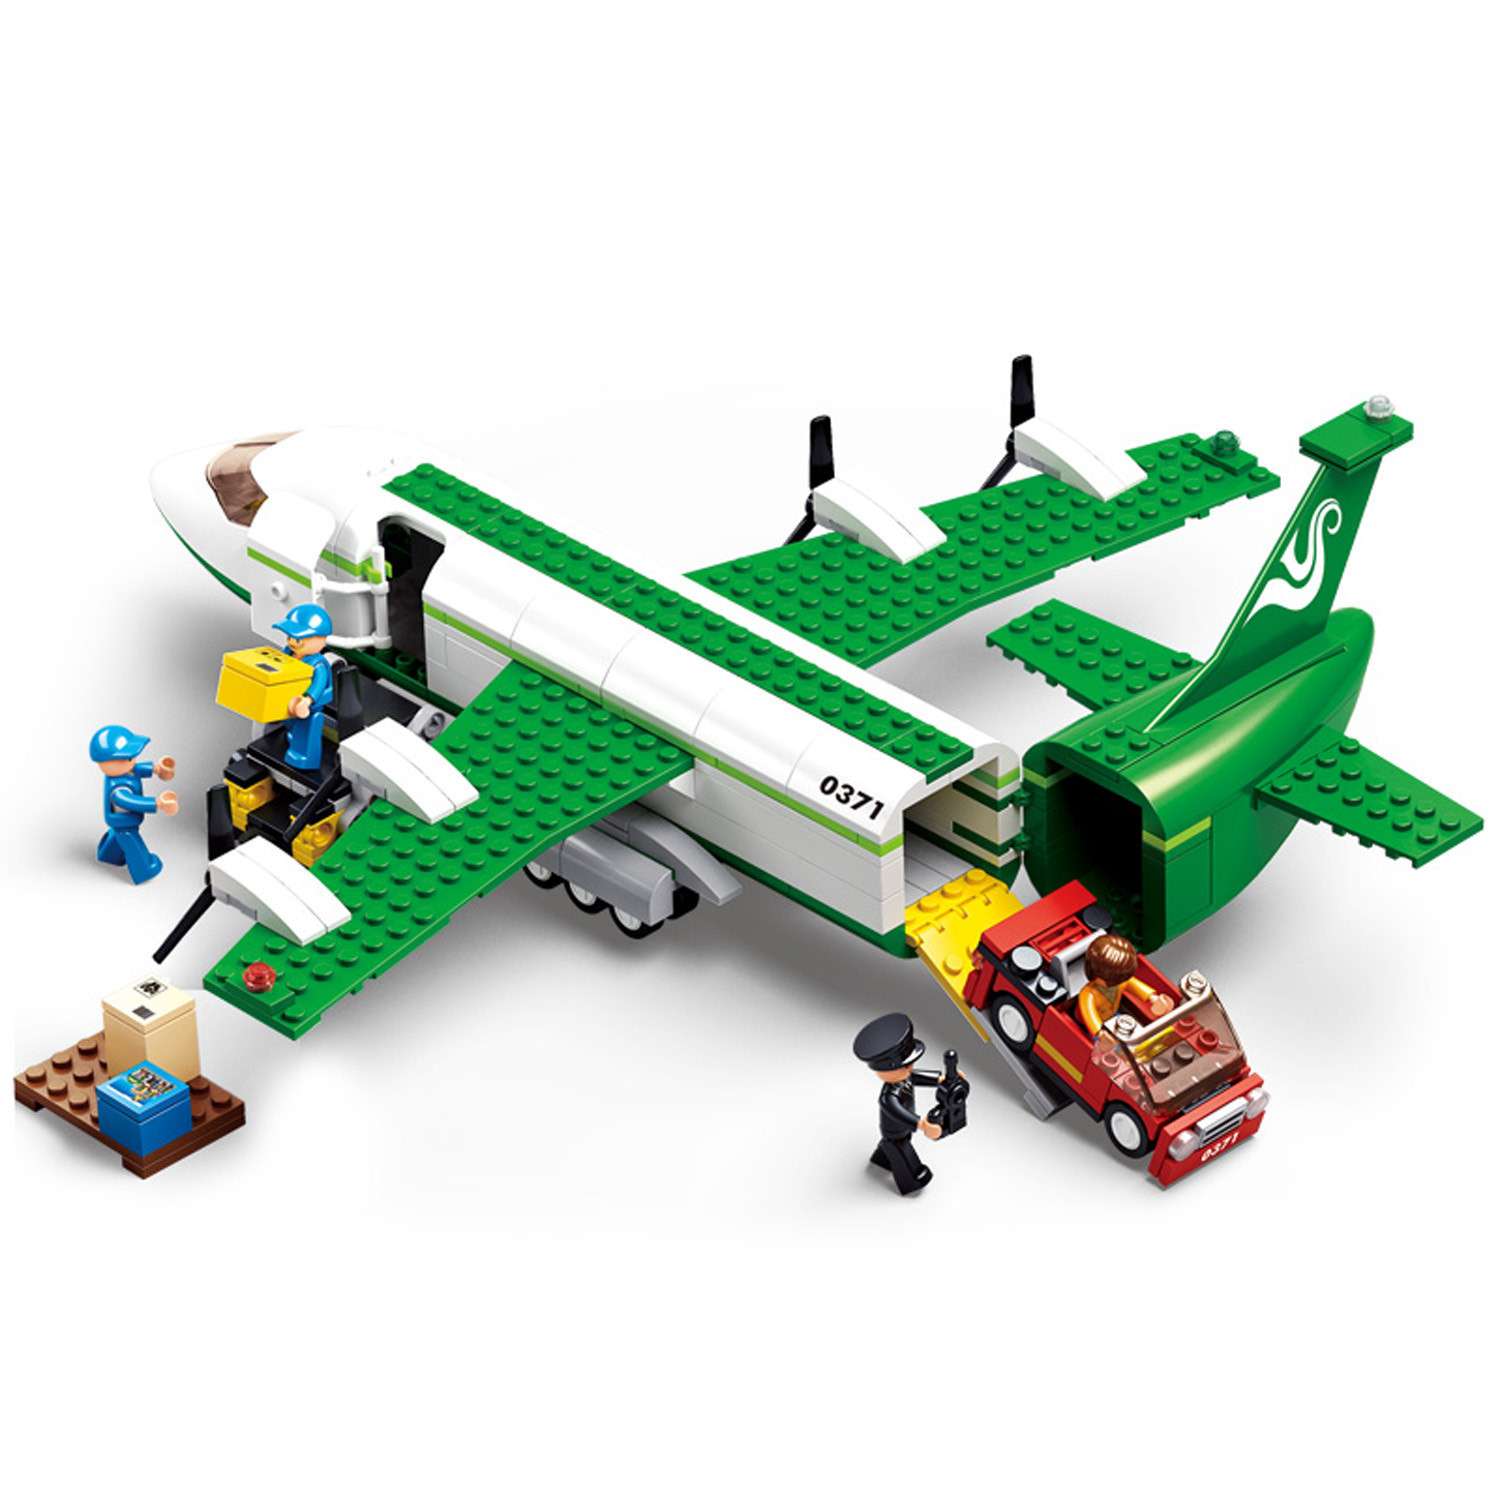 Конструктор LEGO City Пассажирский самолёт 60262